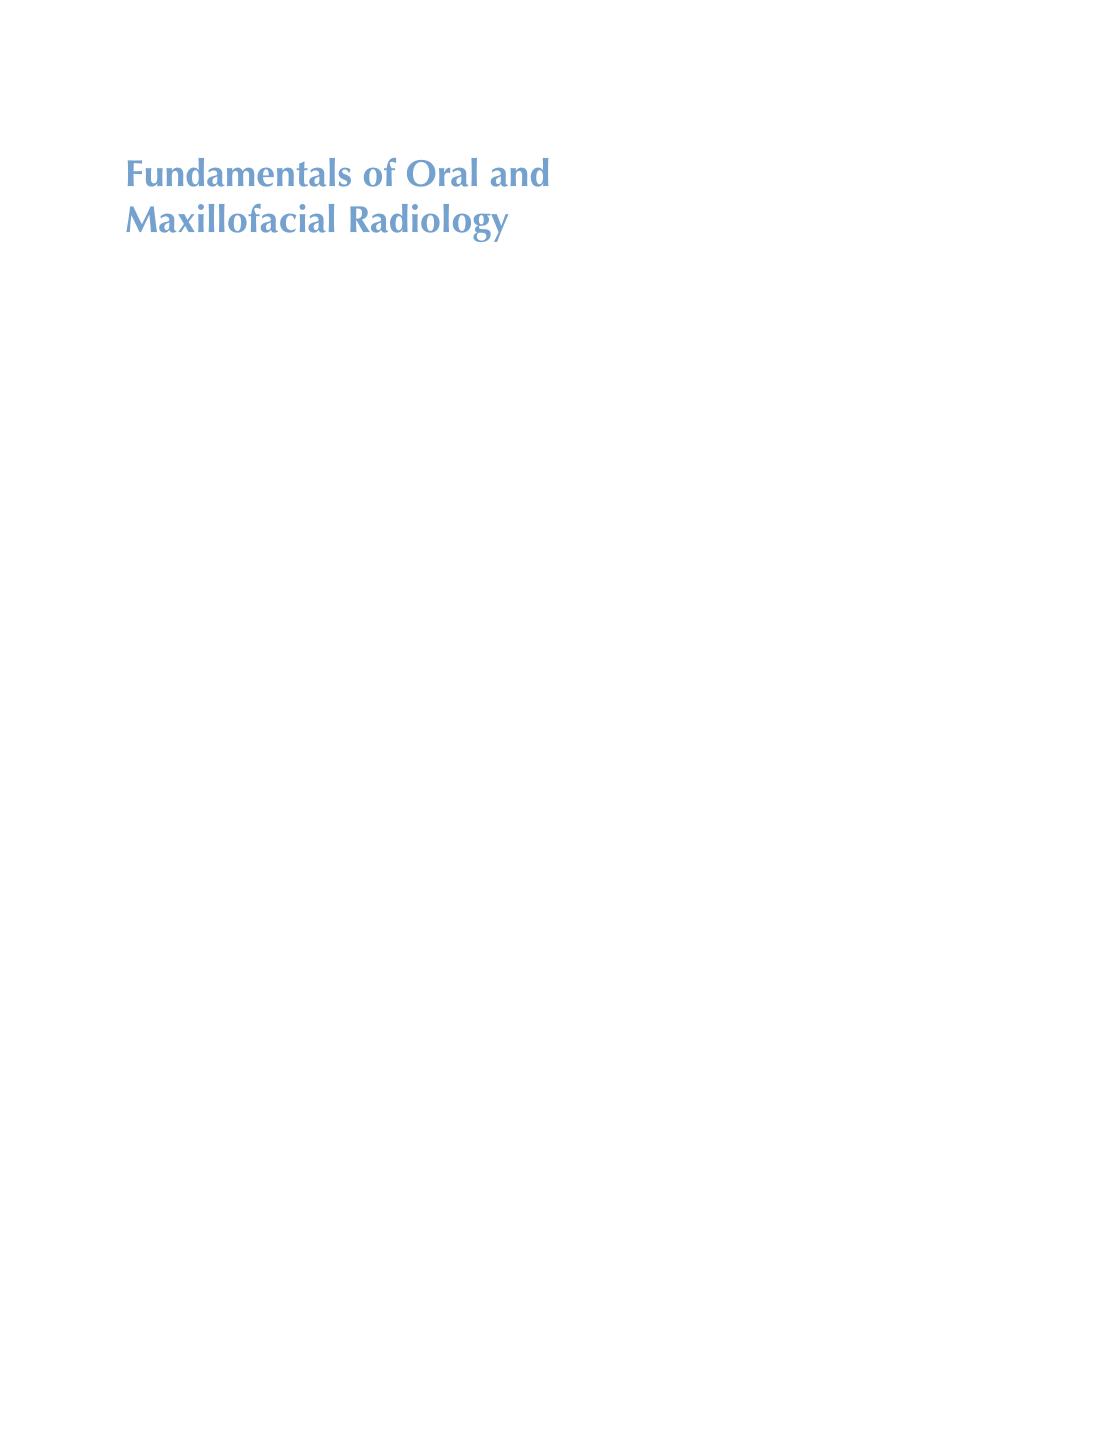 Fundamentals of oral and maxillofacial radiology, 2017